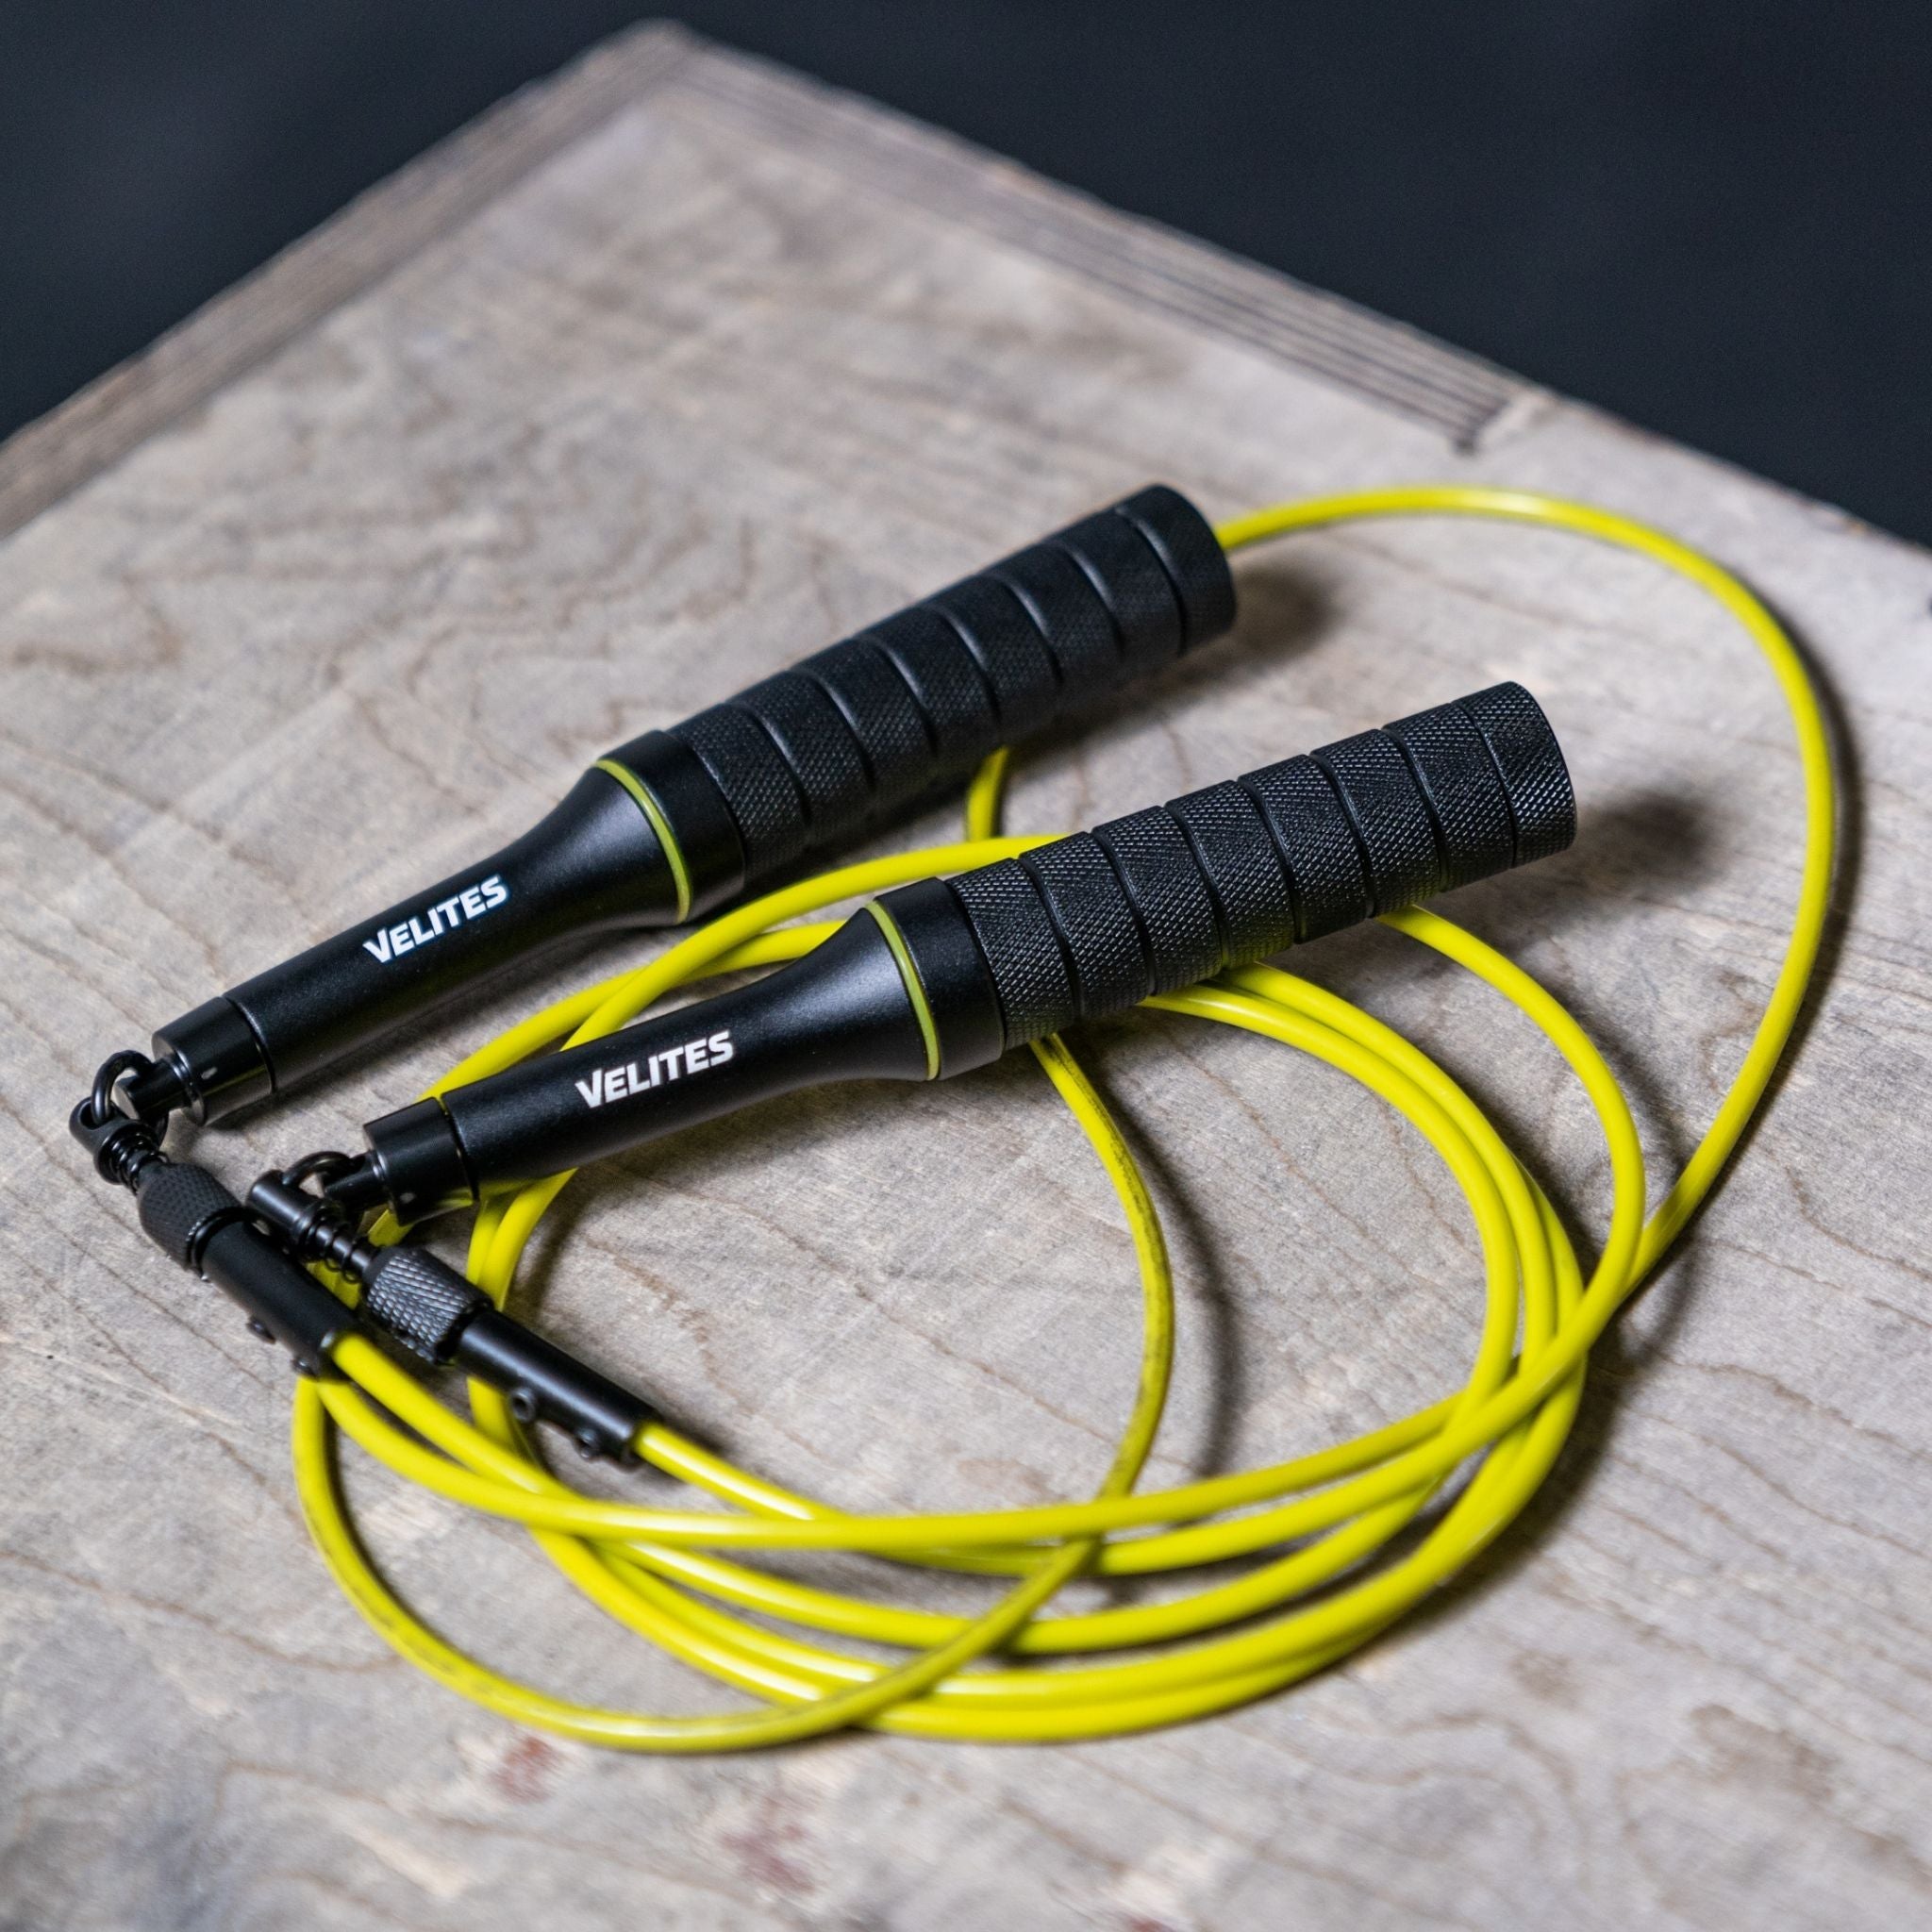 Velites I Cable de Repuesto para Comba de Saltar de Crosstraining, Fitness  y Boxeo, Estándar 4mm Verde